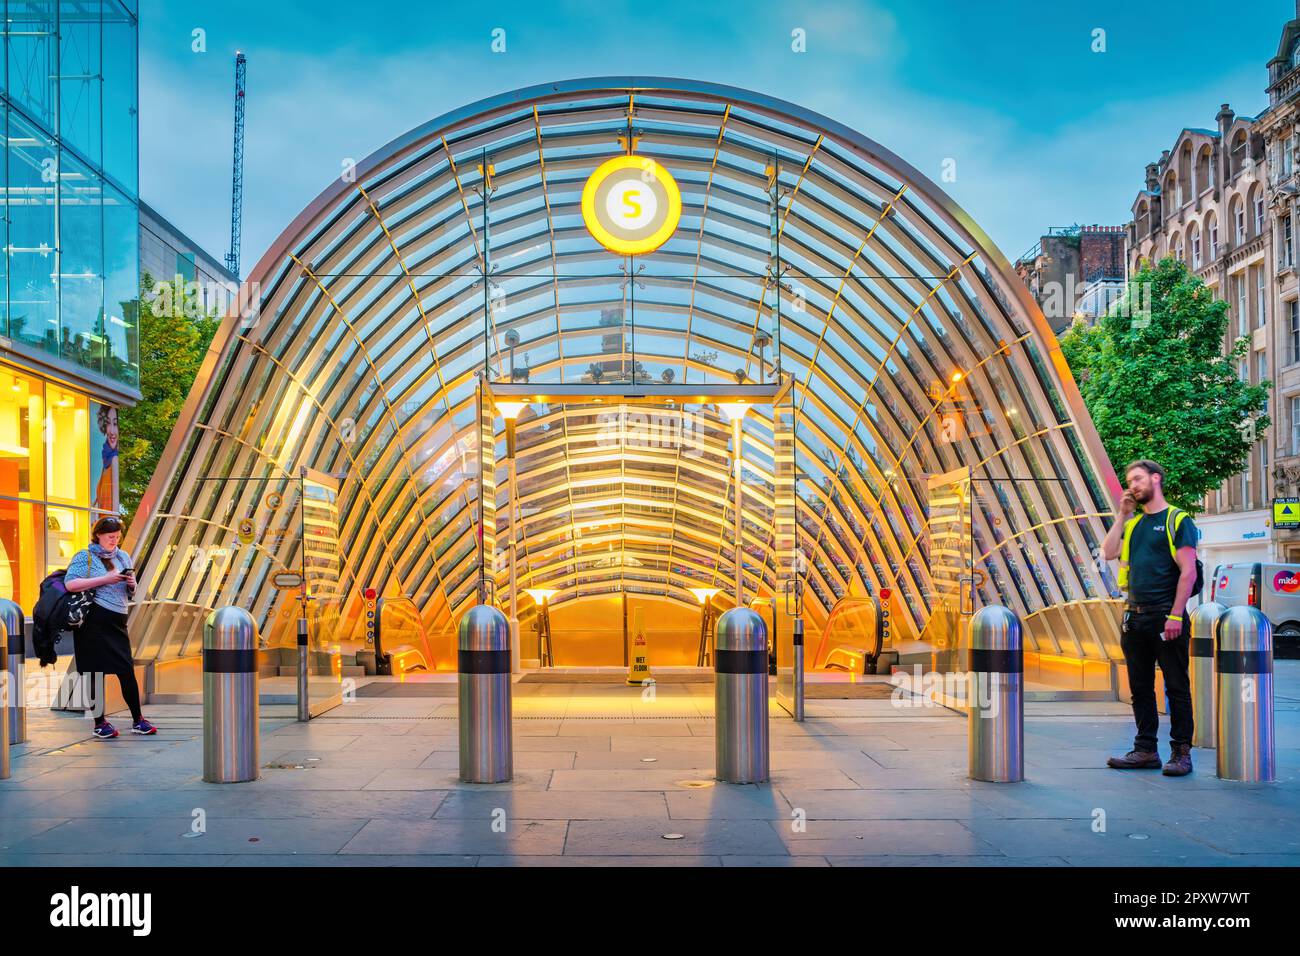 L'entrée de la station de métro St Enoch dans le centre-ville de Glasgow, en Écosse, la nuit. Banque D'Images